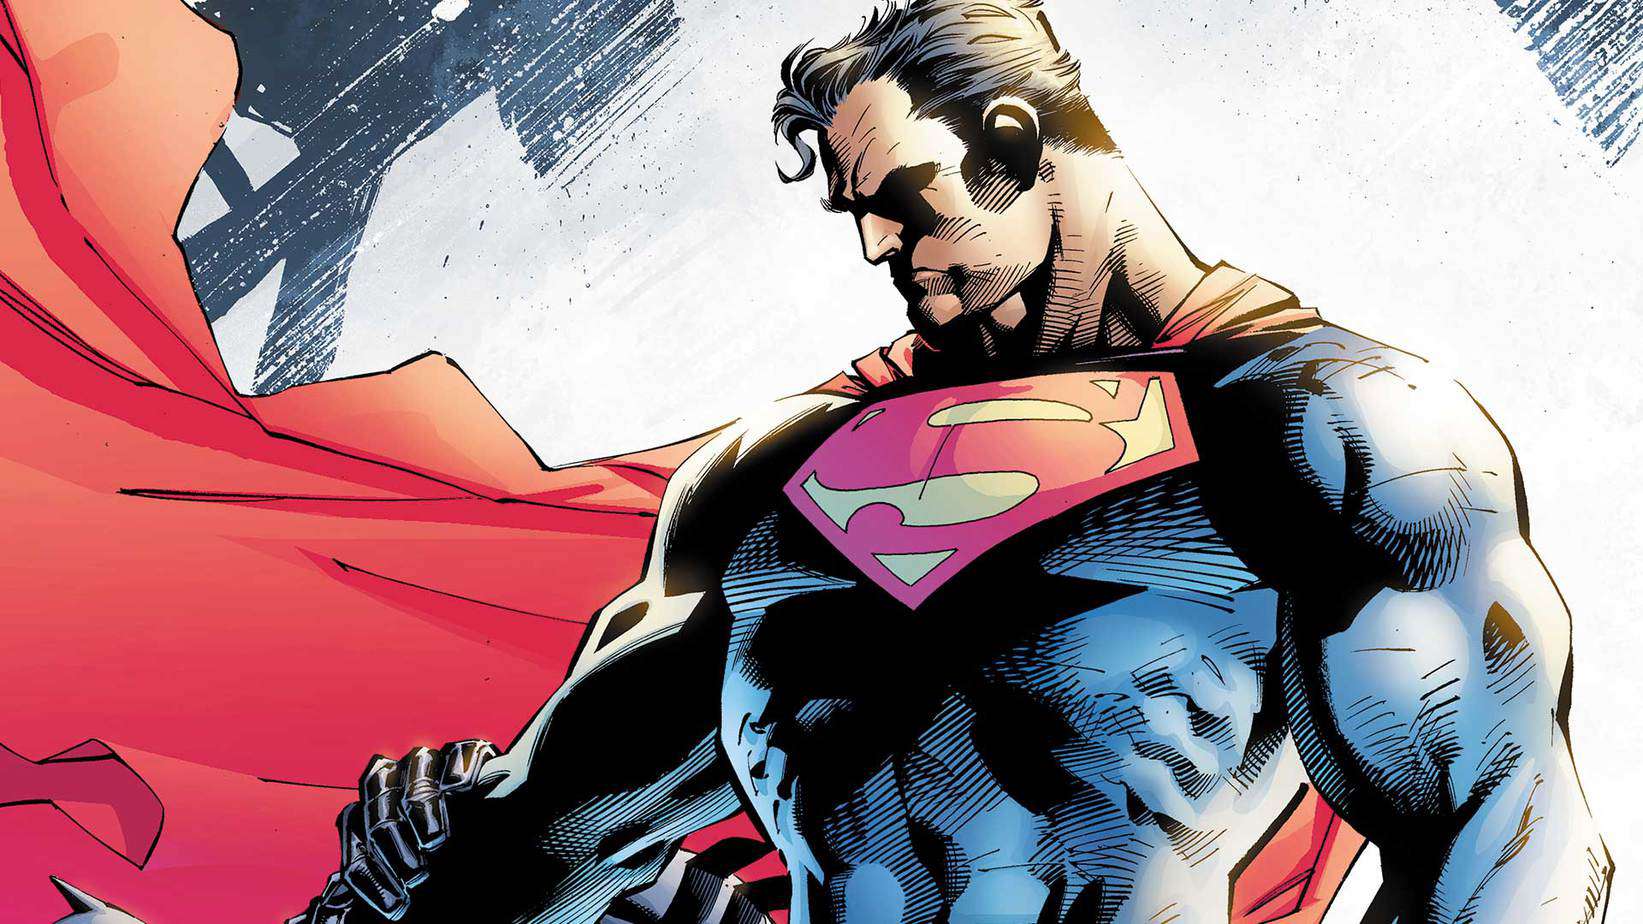 J.J. Abrams Navodno Radi na Novom "Cape" Projektu za WB - Može li to biti Superman?